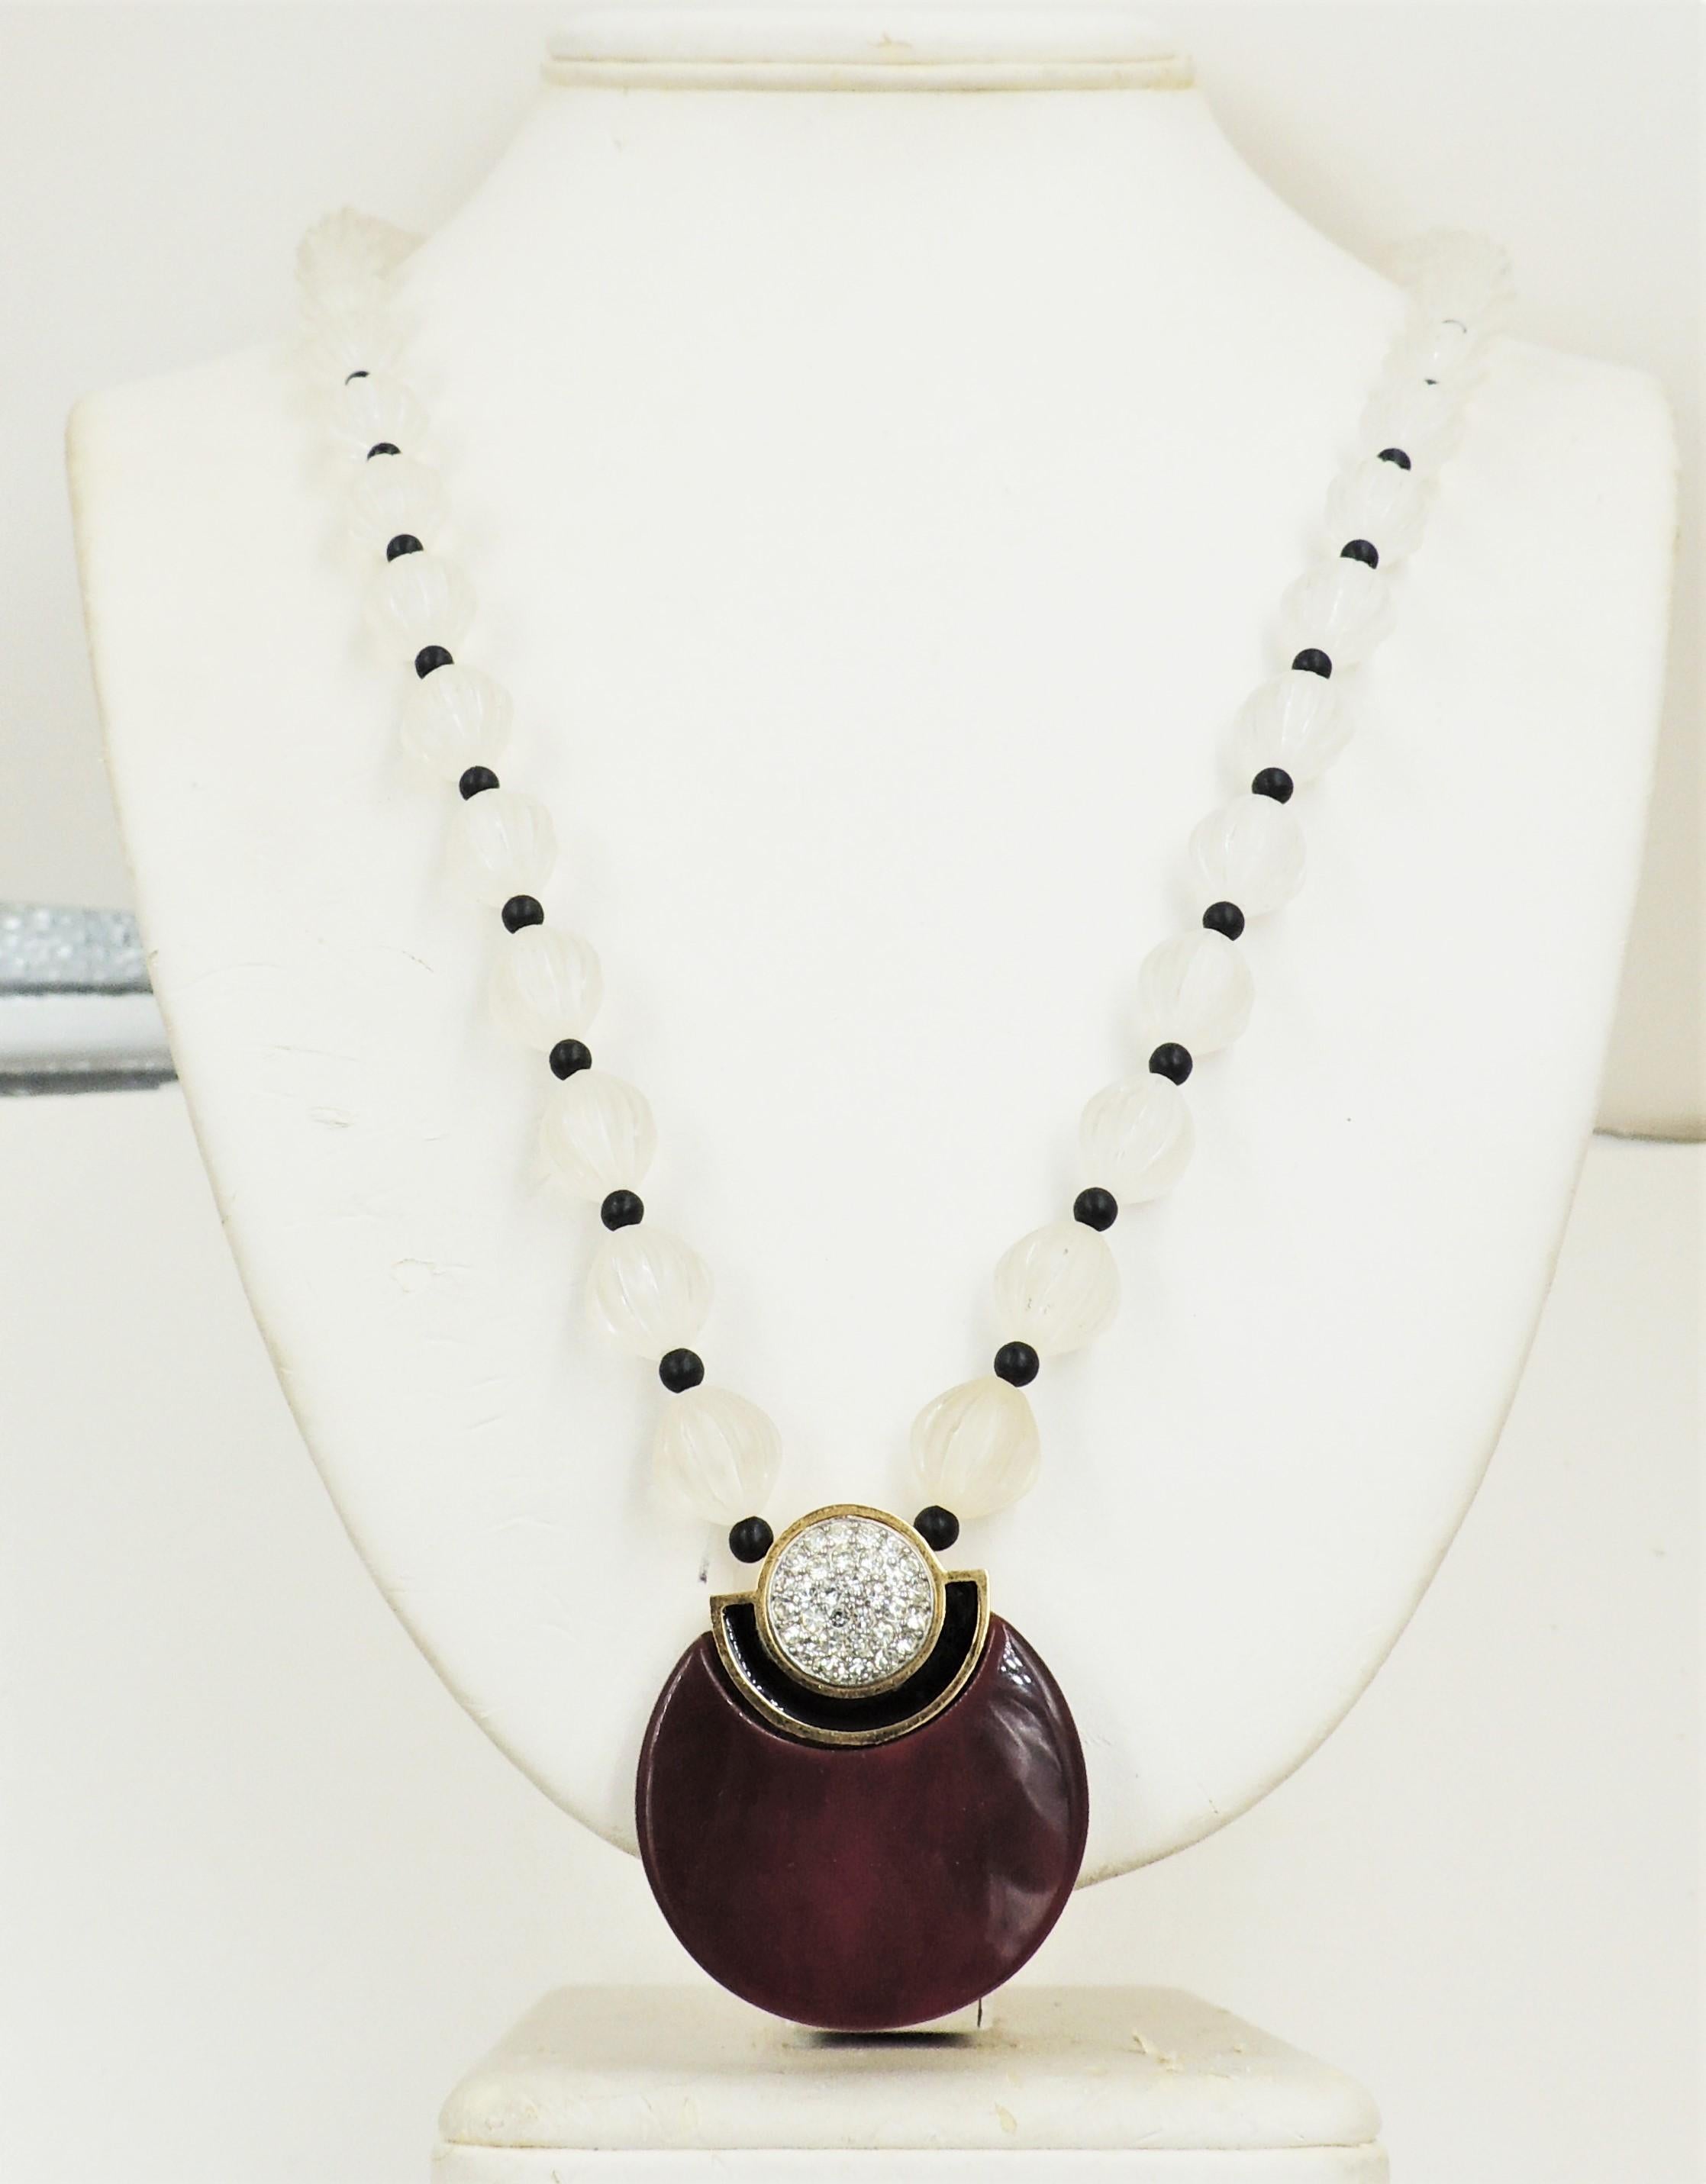 Collier de style déco des années 1980 en Lucite marron/rouge avec émail noir et strass pavés clairs, avec des perles melon givrées et des entretoises noires, avec un fermoir GG à boucle déployante. Marqué 